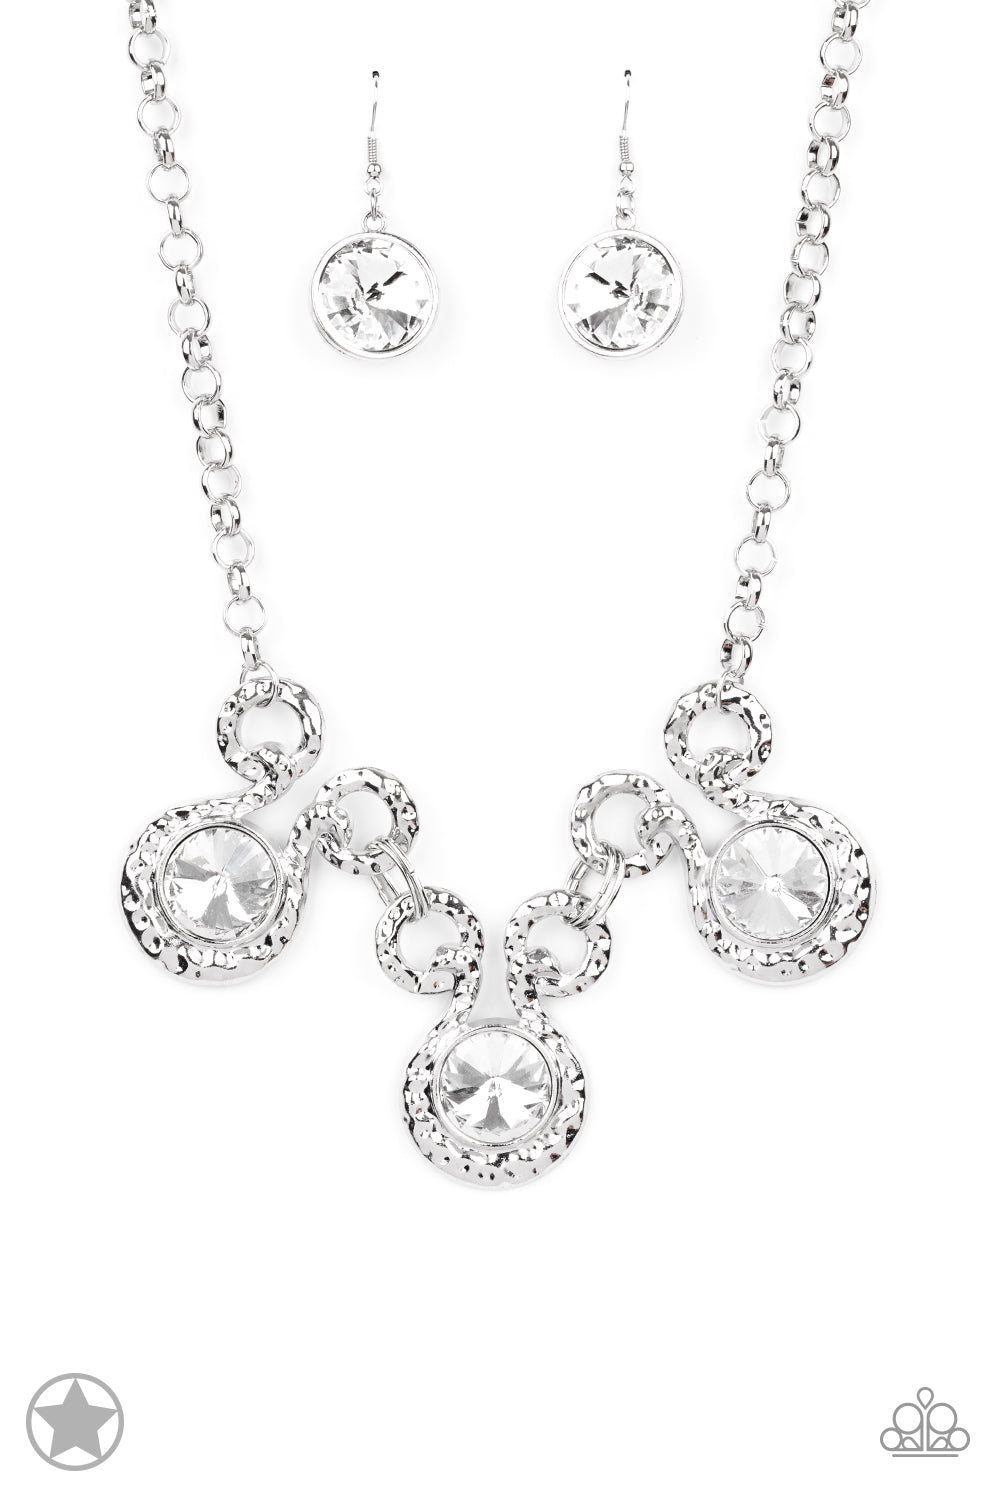 Hypnotized - Silver Necklace